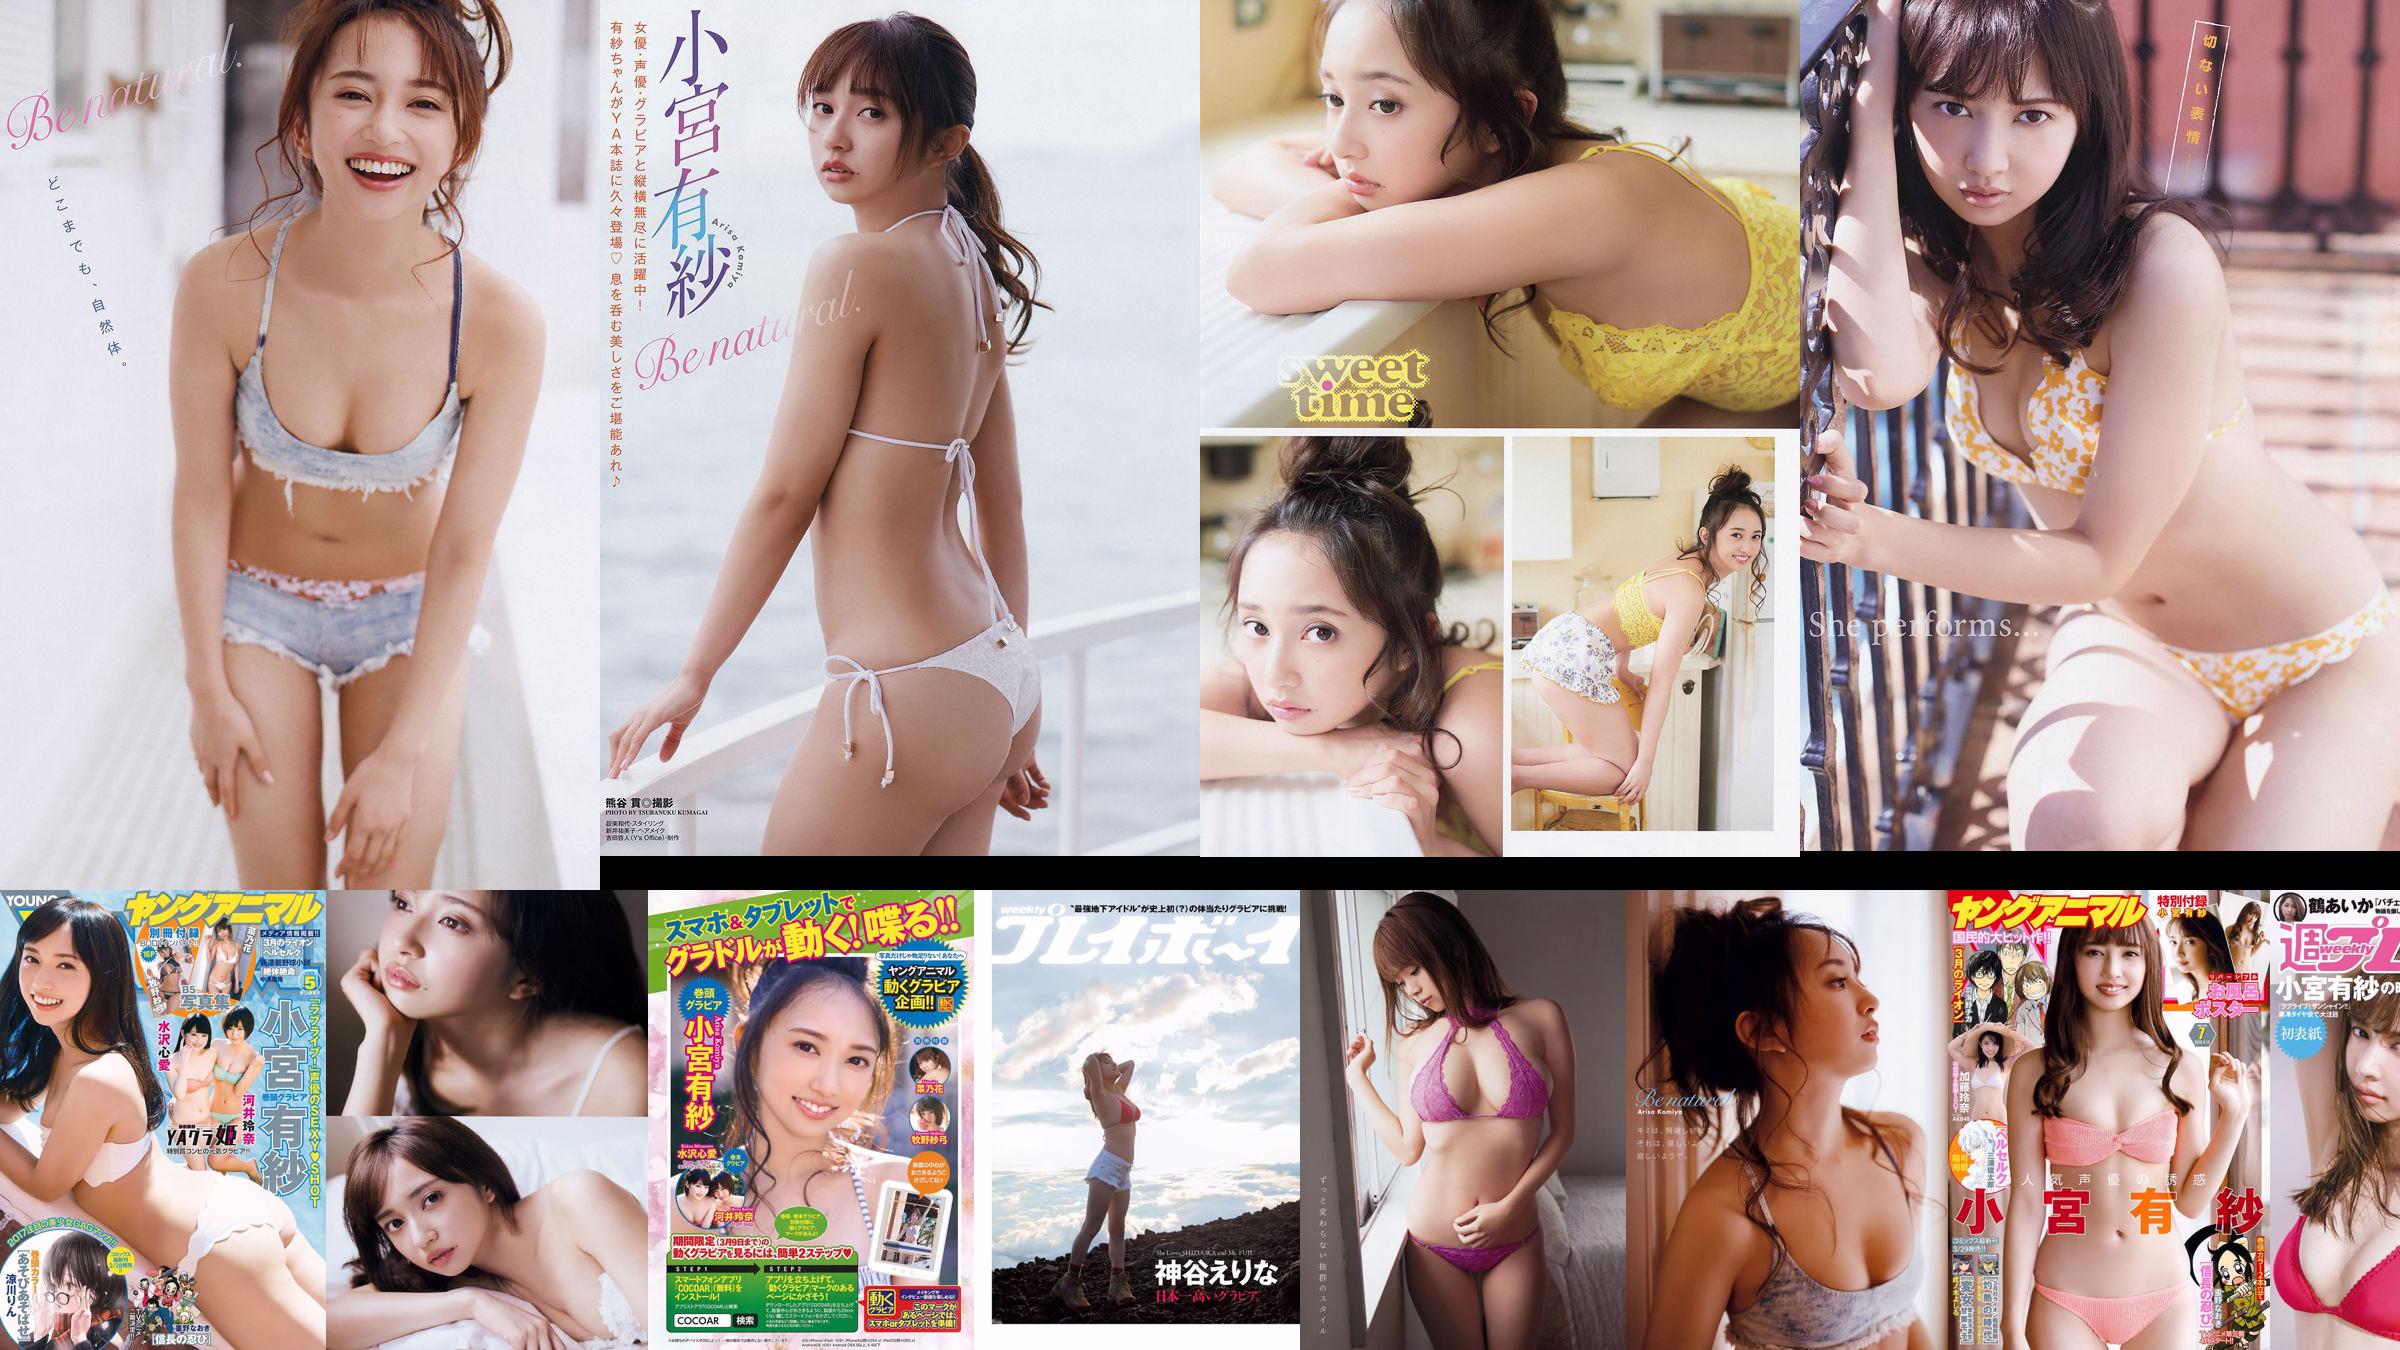 Arisa Komiya Yuna Sekine [Young Animal] 2018 No.20 Photo Magazine No.42fe90 Page 1